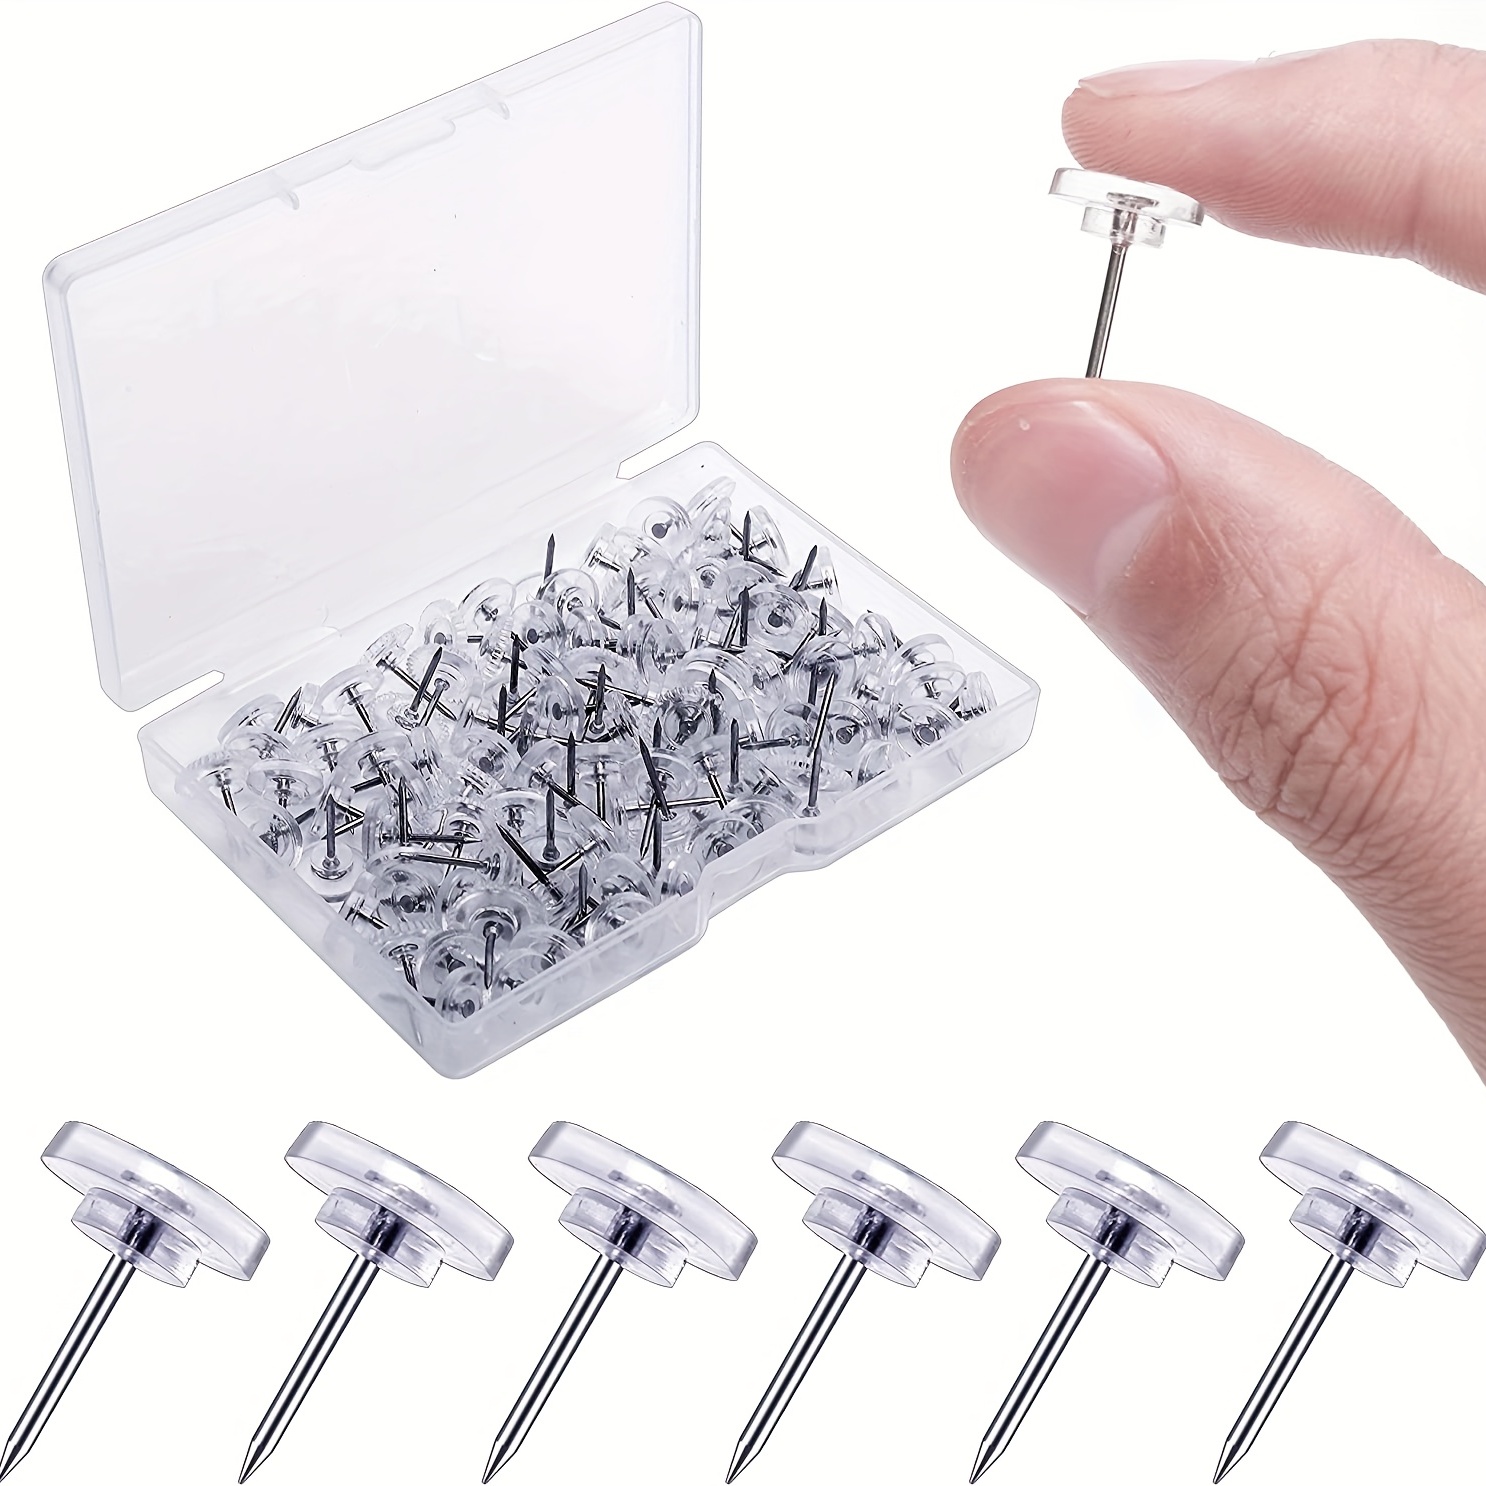 600 Pieces Steel Thumb Tacks, Flat Metal Push Pins Thumbtacks